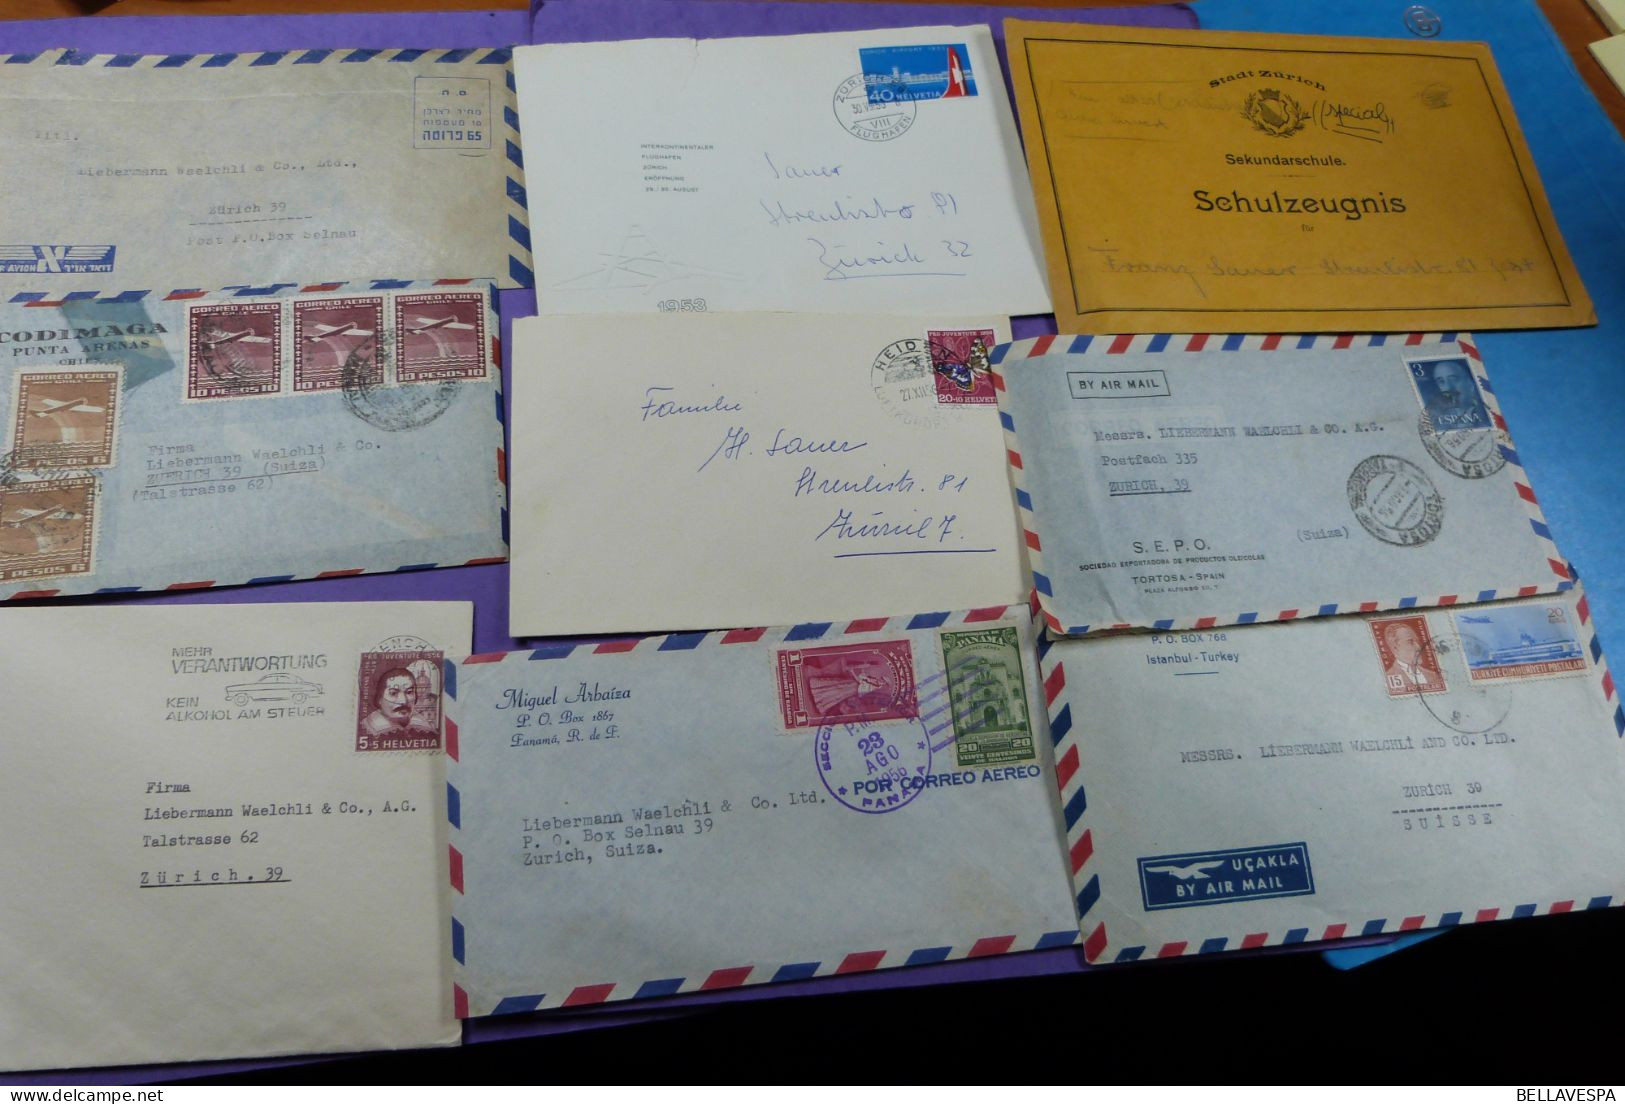 Ruim More than x 400 world wide post  letters beacoup de fa Liebermann Waelchi Zurrich and Belgium Standard Ahz Leuven